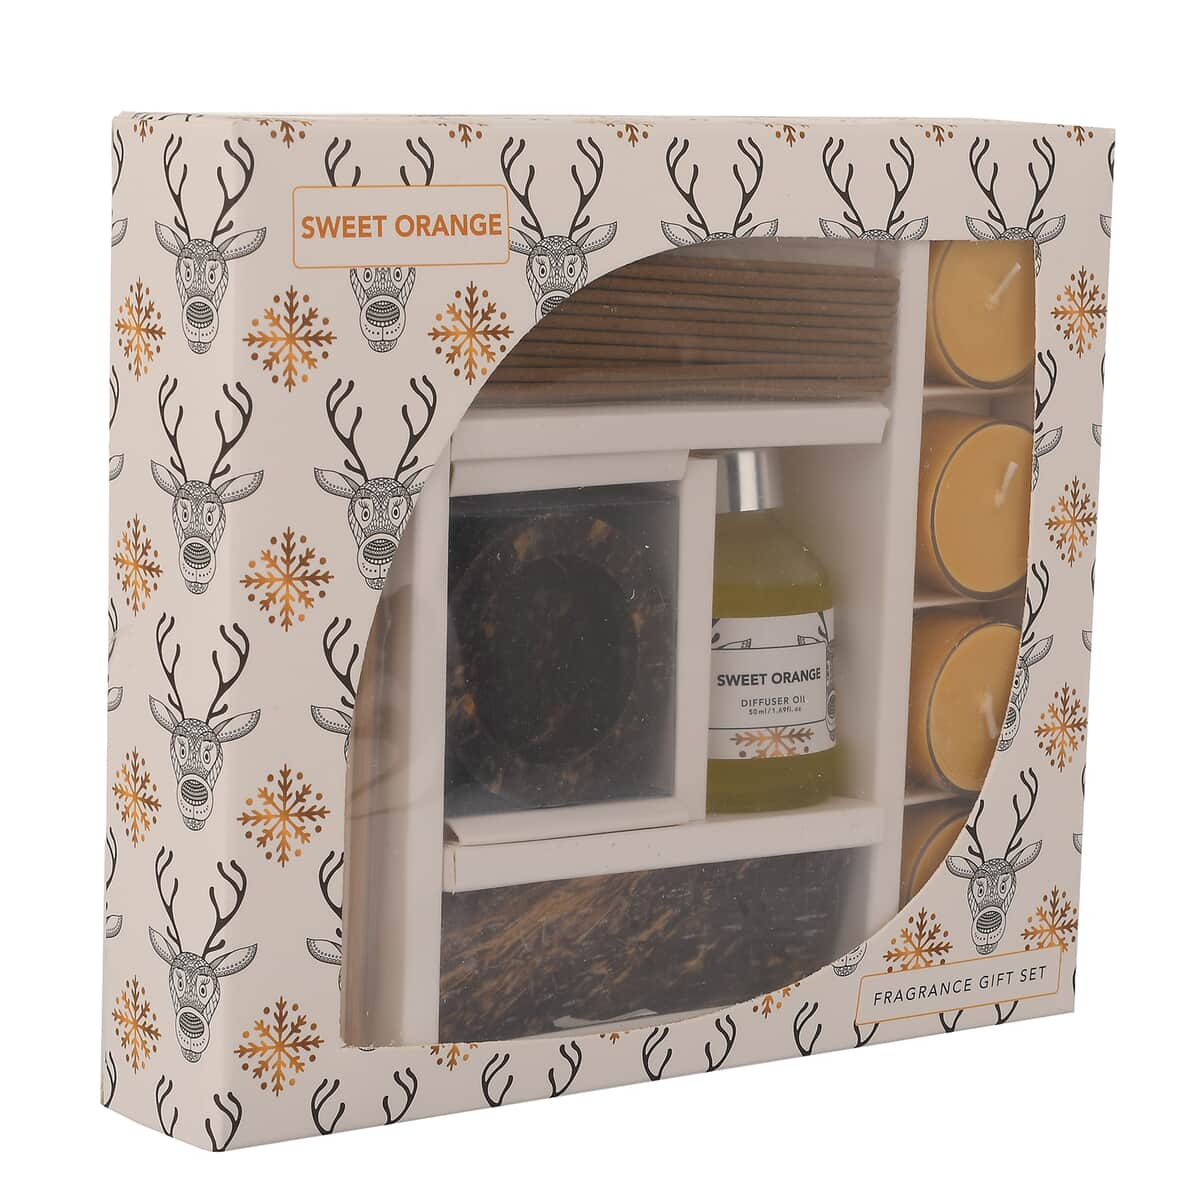 Fragrance Gift Set (Reed Diffuser, 4 Tea Lights & Incense Holder with 20 Sticks) Fragrance: Sweet Orange image number 2